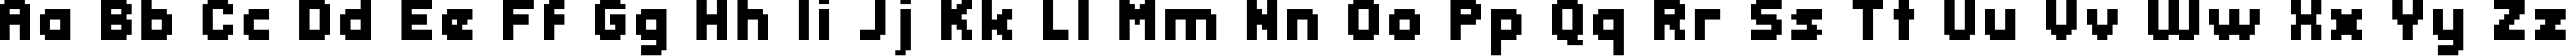 Пример написания английского алфавита шрифтом header 08_66